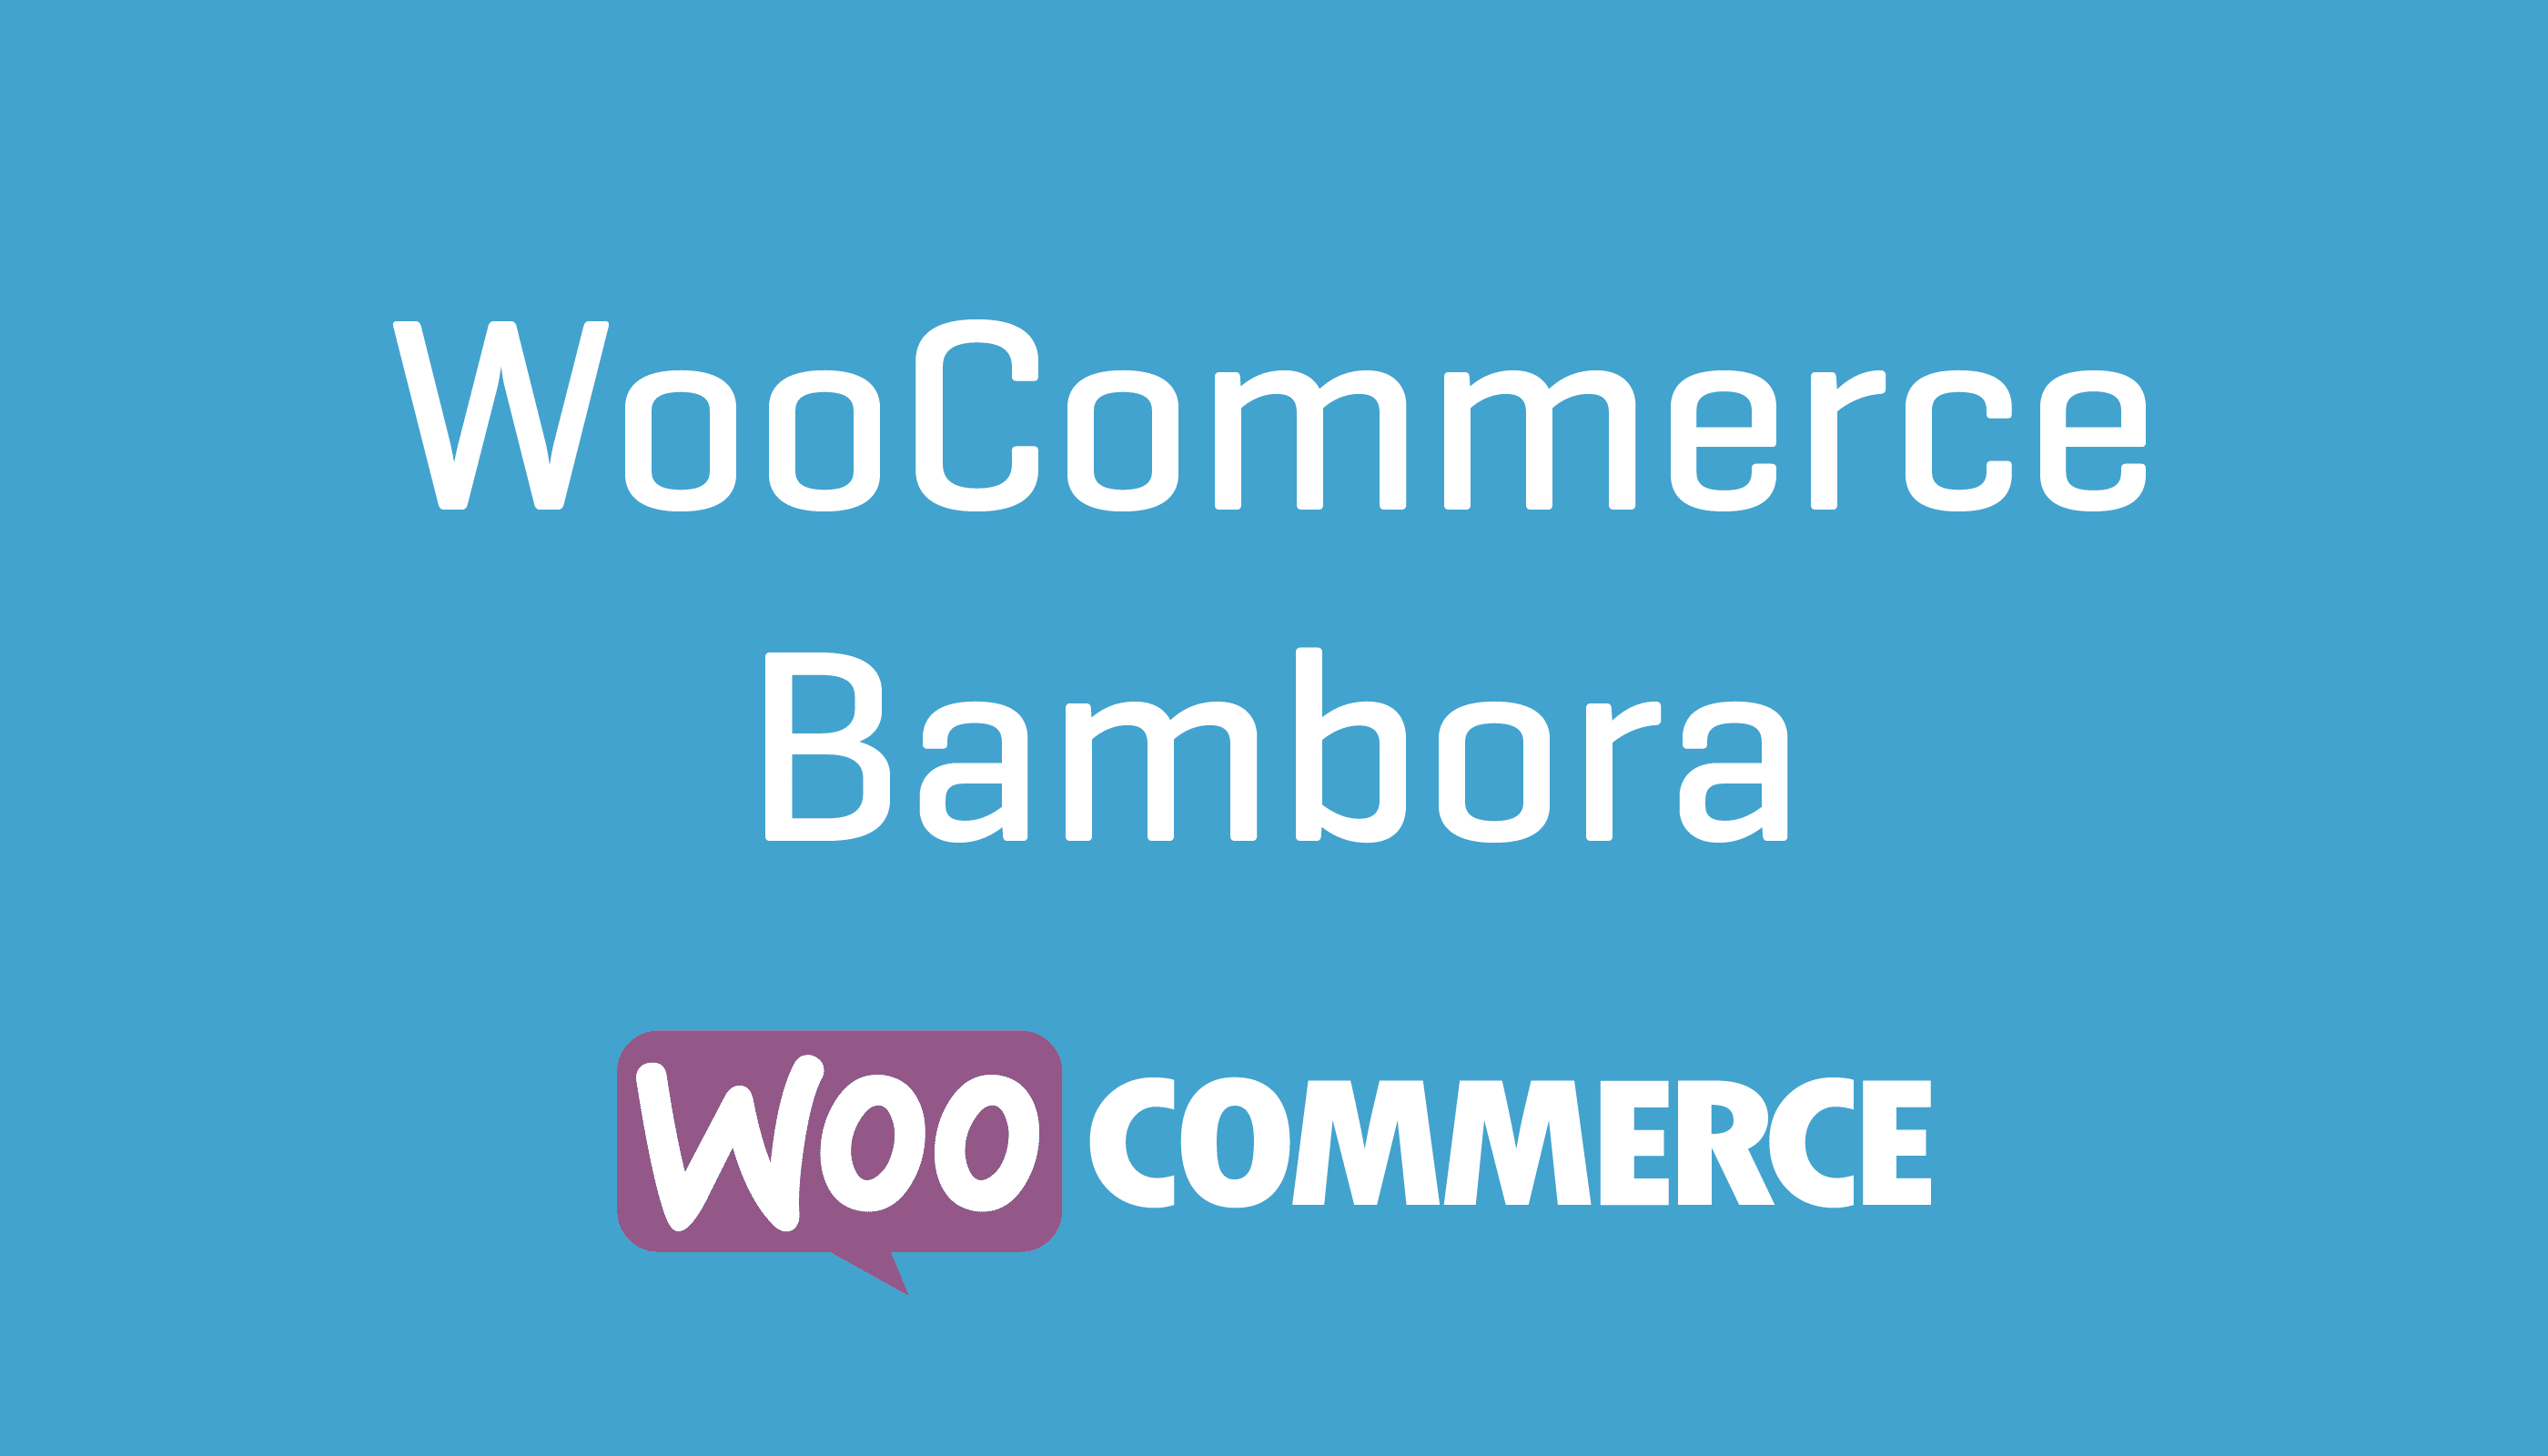 WooCommerce Bambora